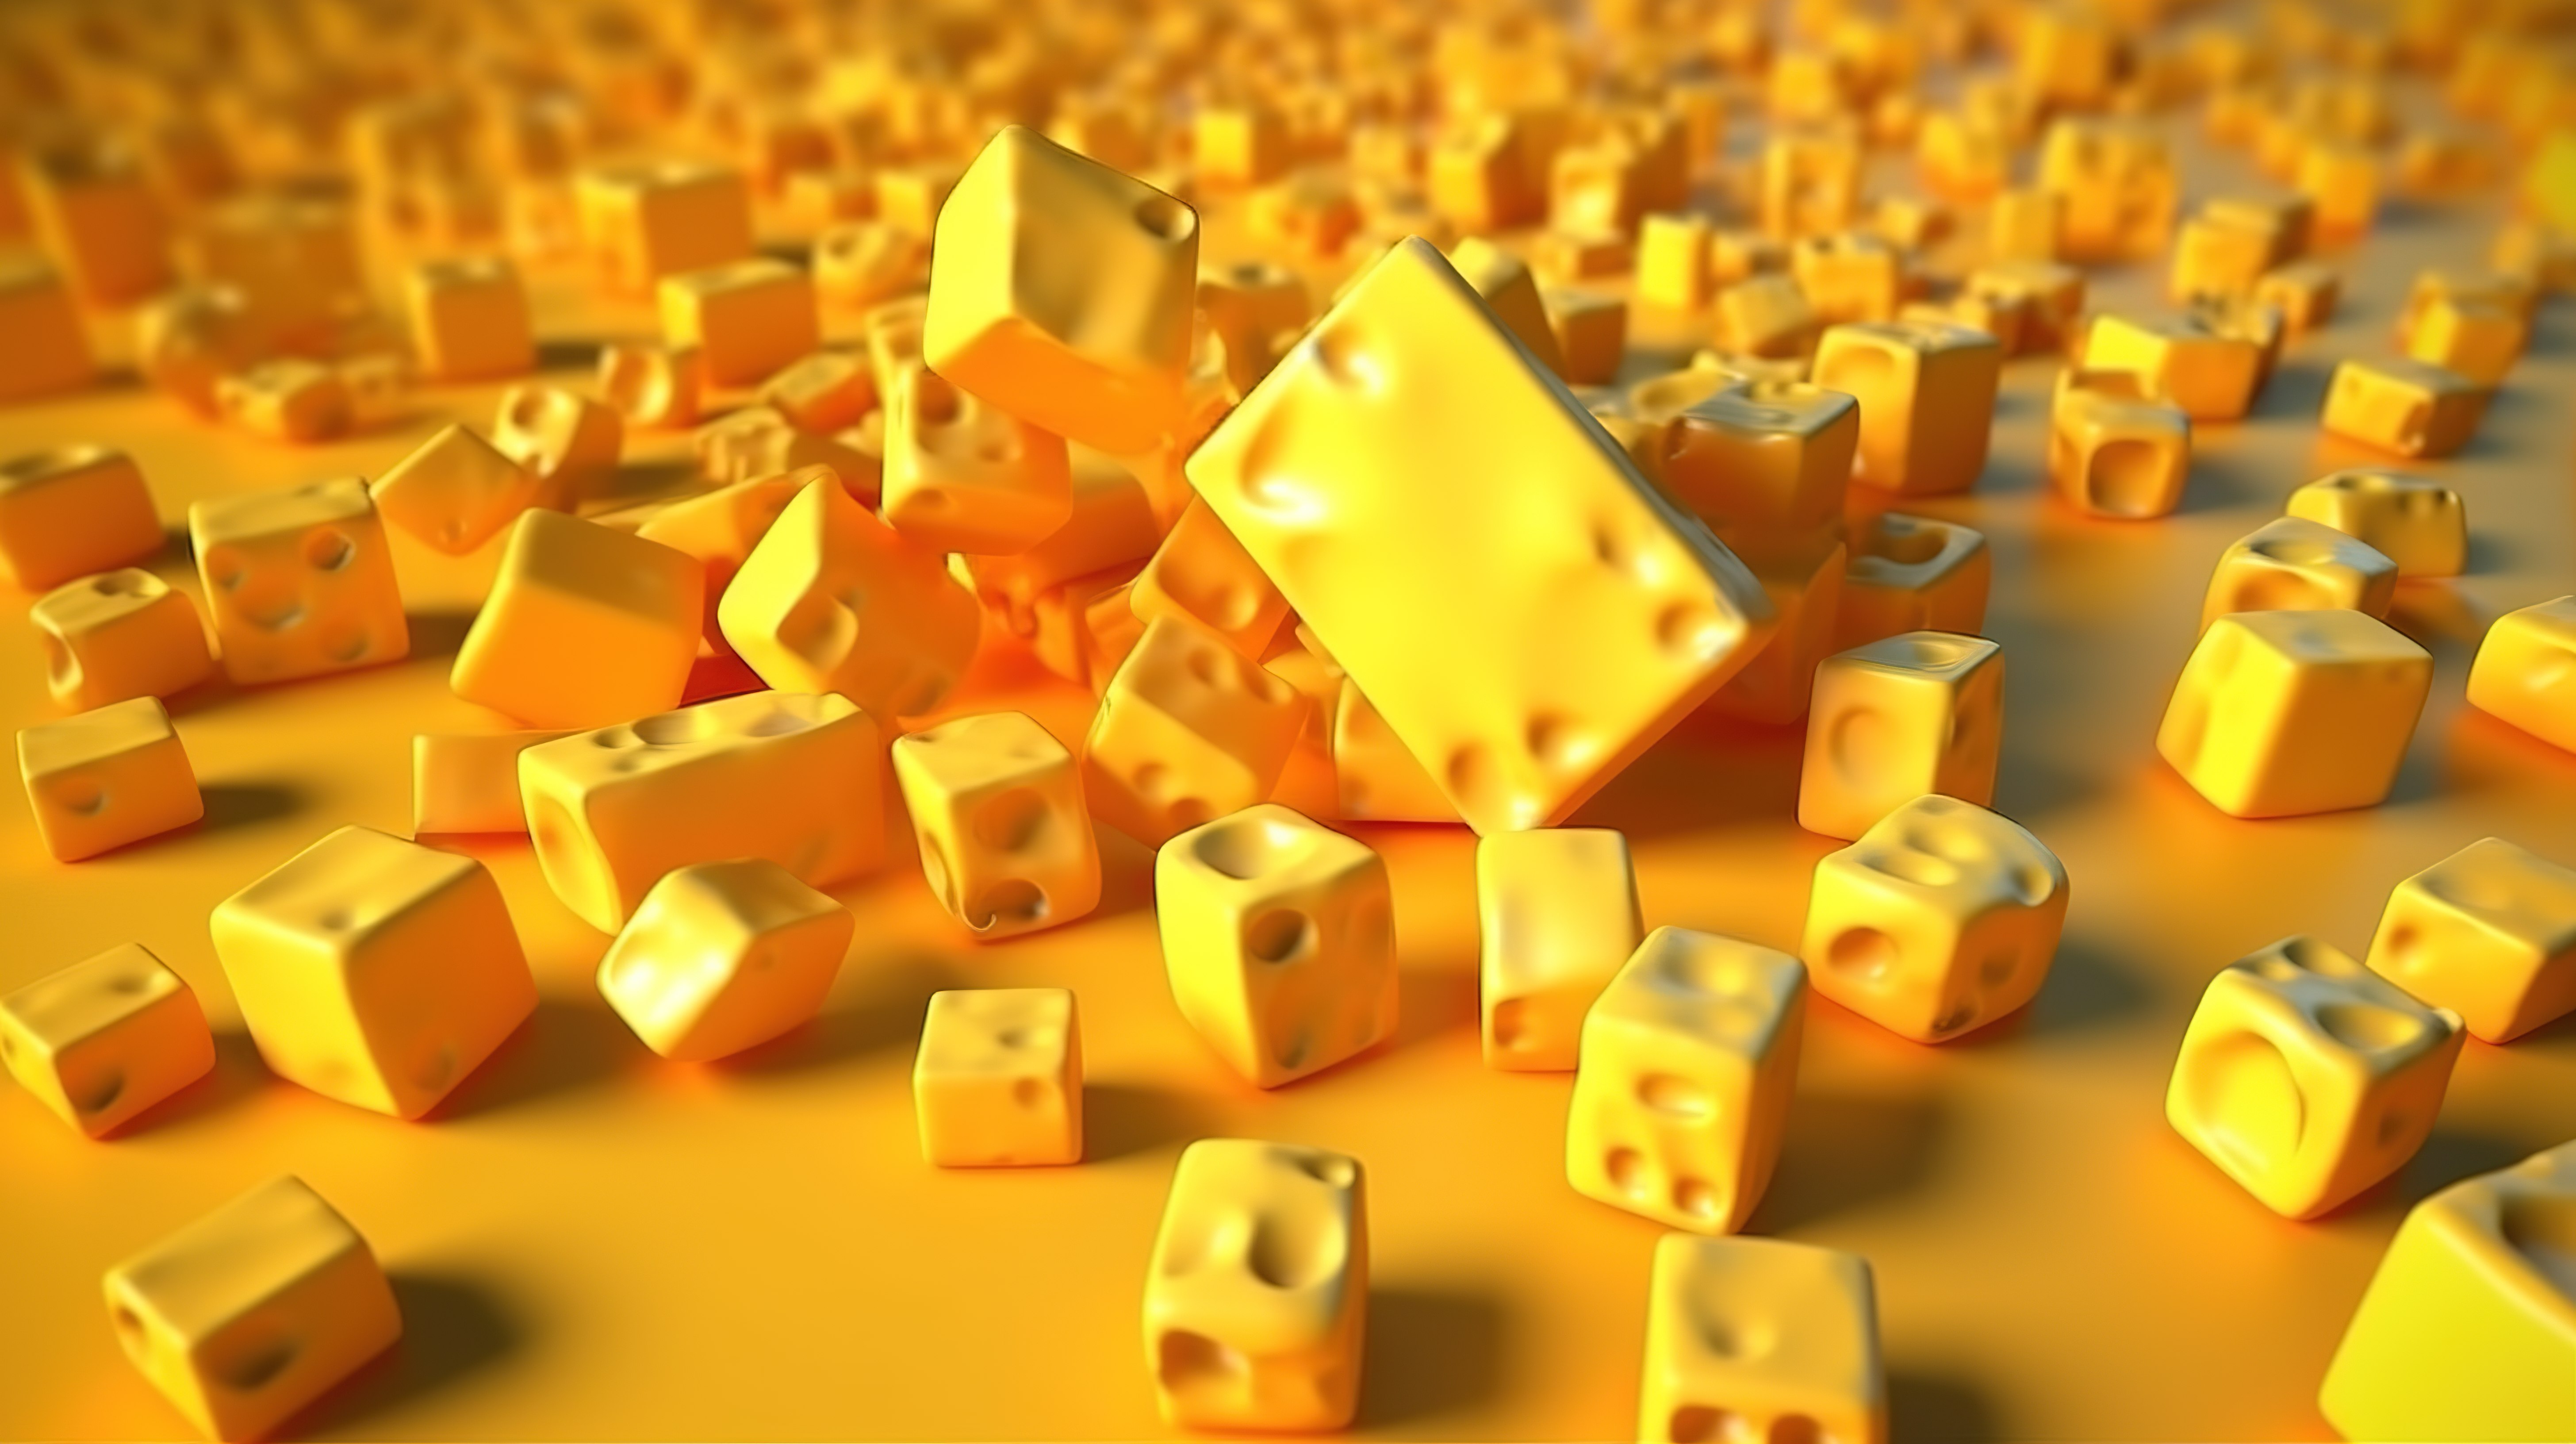 3d 中充满活力的黄色背景下的一堆马斯达姆奶酪块图片